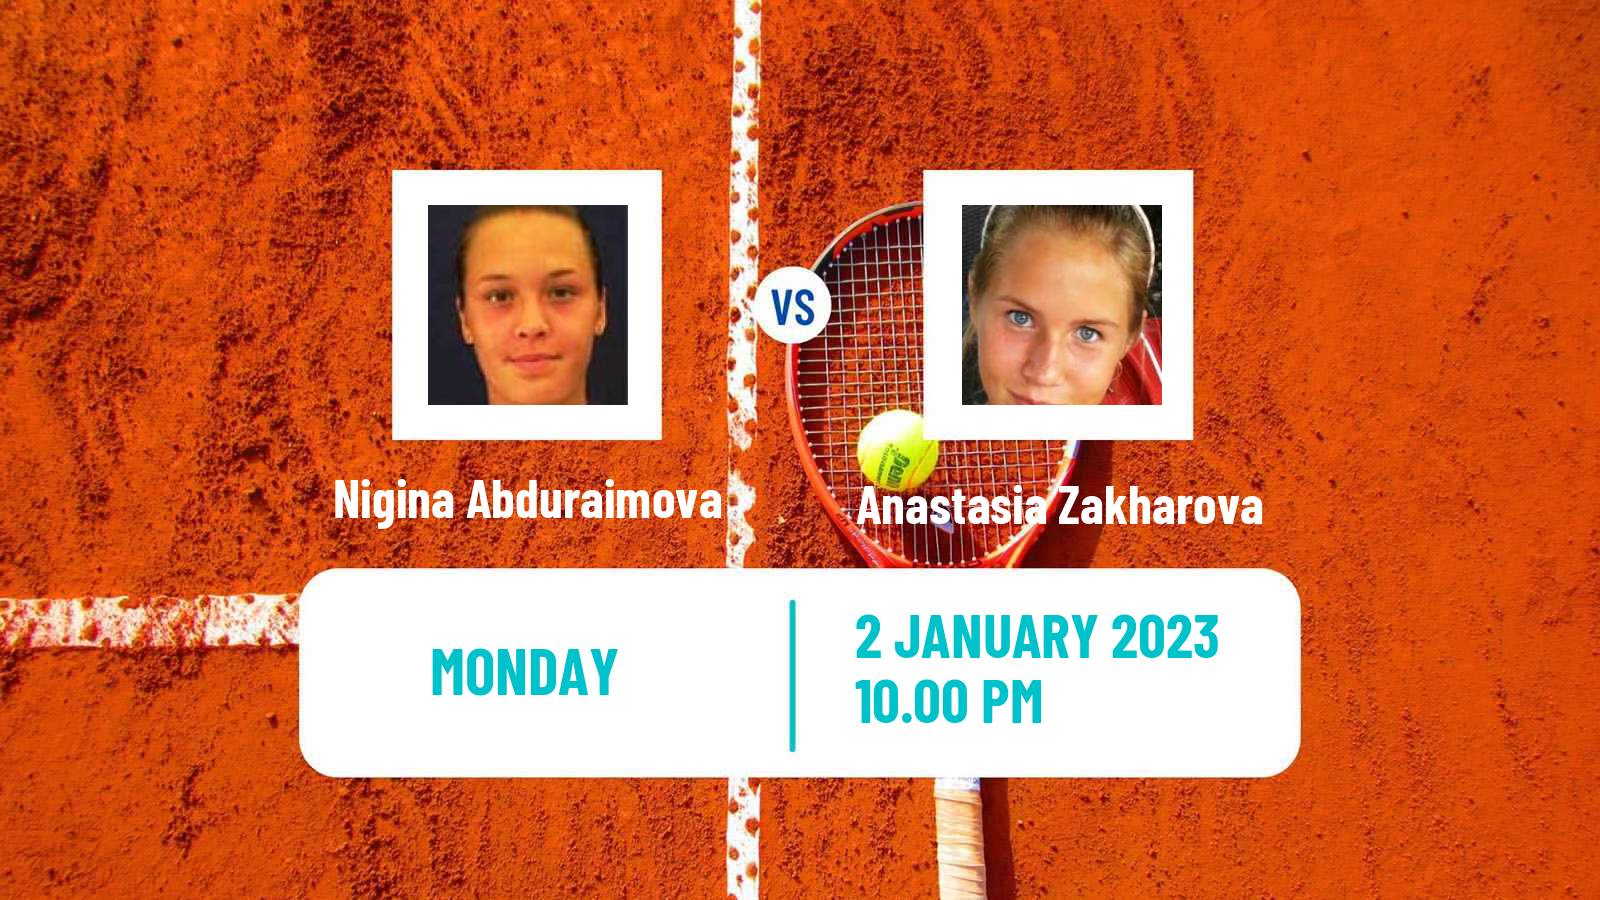 Tennis ITF Tournaments Nigina Abduraimova - Anastasia Zakharova